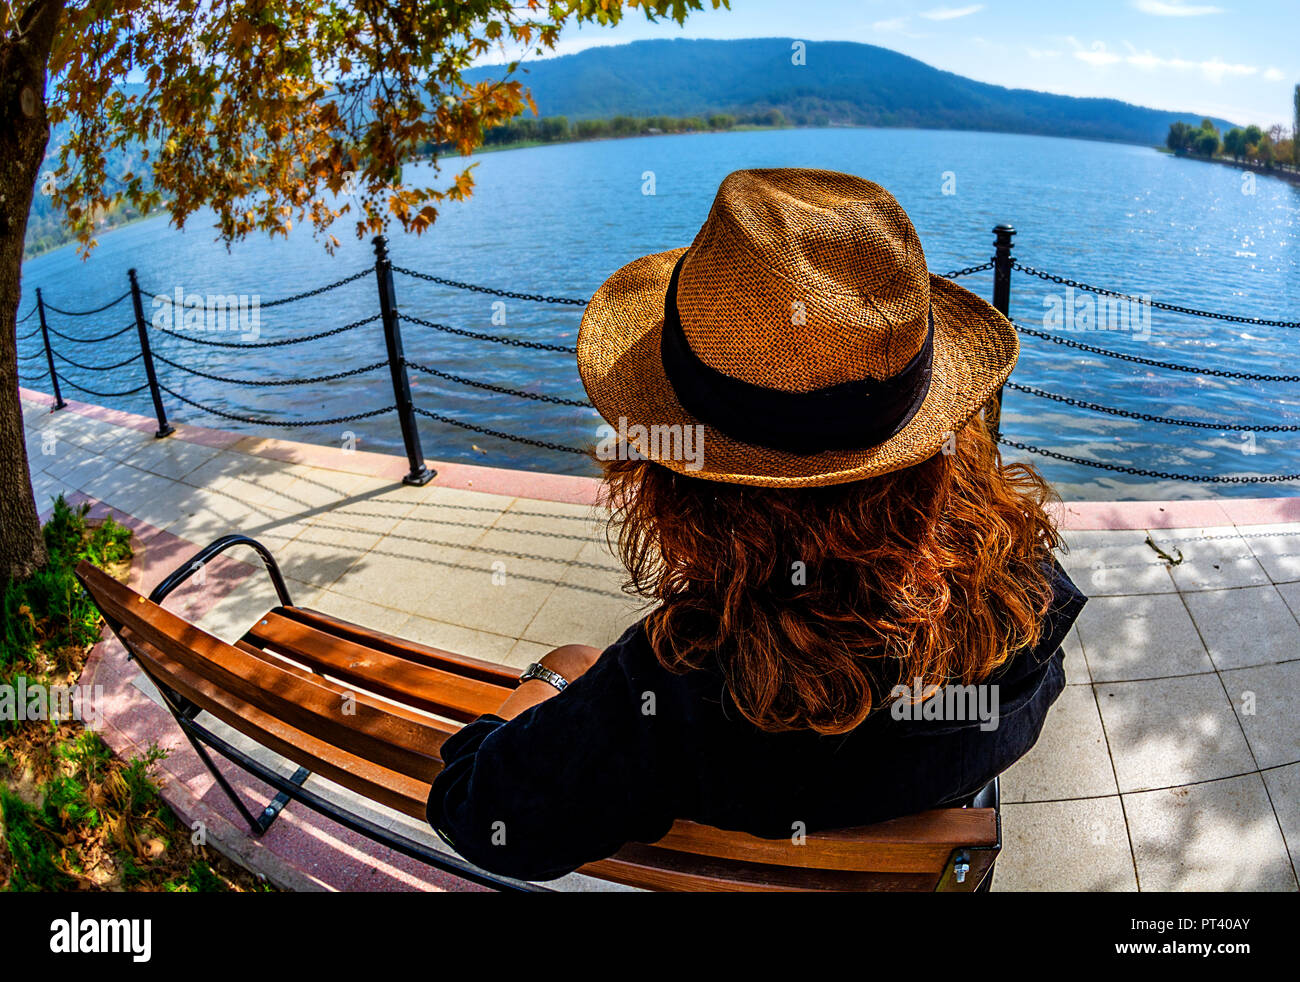 Izmir Ödemiş Bozdağ die Reflexionen und einen malerischen Blick auf den See in Gölcük Stadt Stockfoto